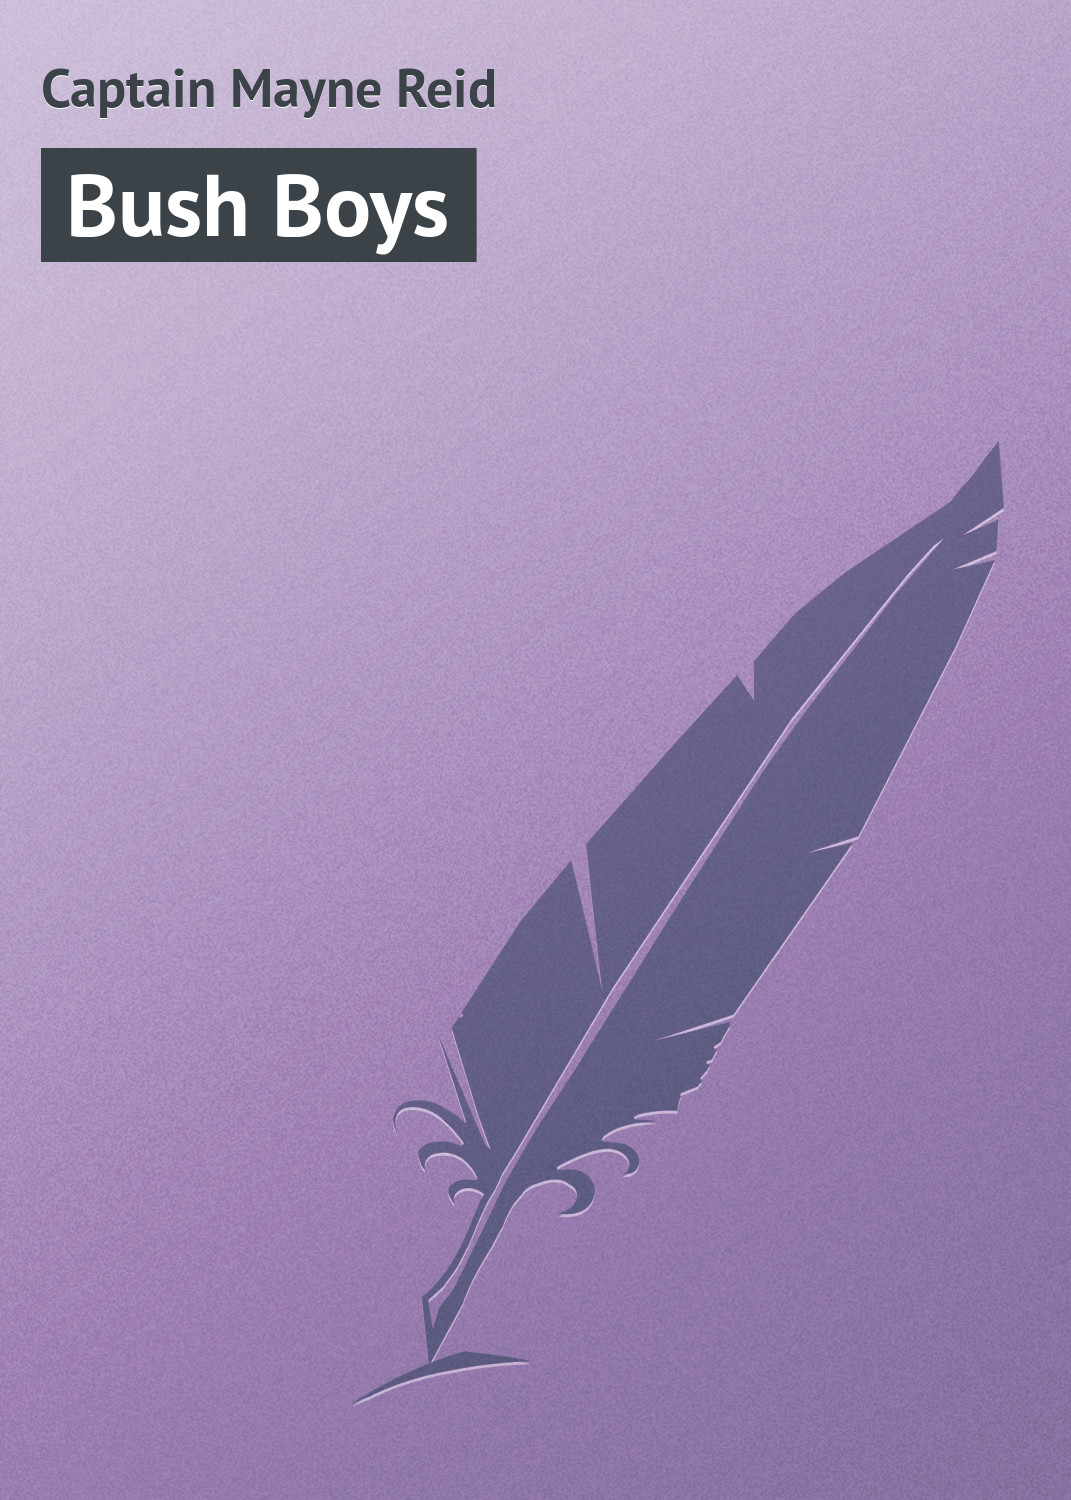 Книга Bush Boys из серии , созданная Captain Mayne, может относится к жанру Зарубежная старинная литература, Зарубежная классика. Стоимость электронной книги Bush Boys с идентификатором 21103414 составляет 5.99 руб.